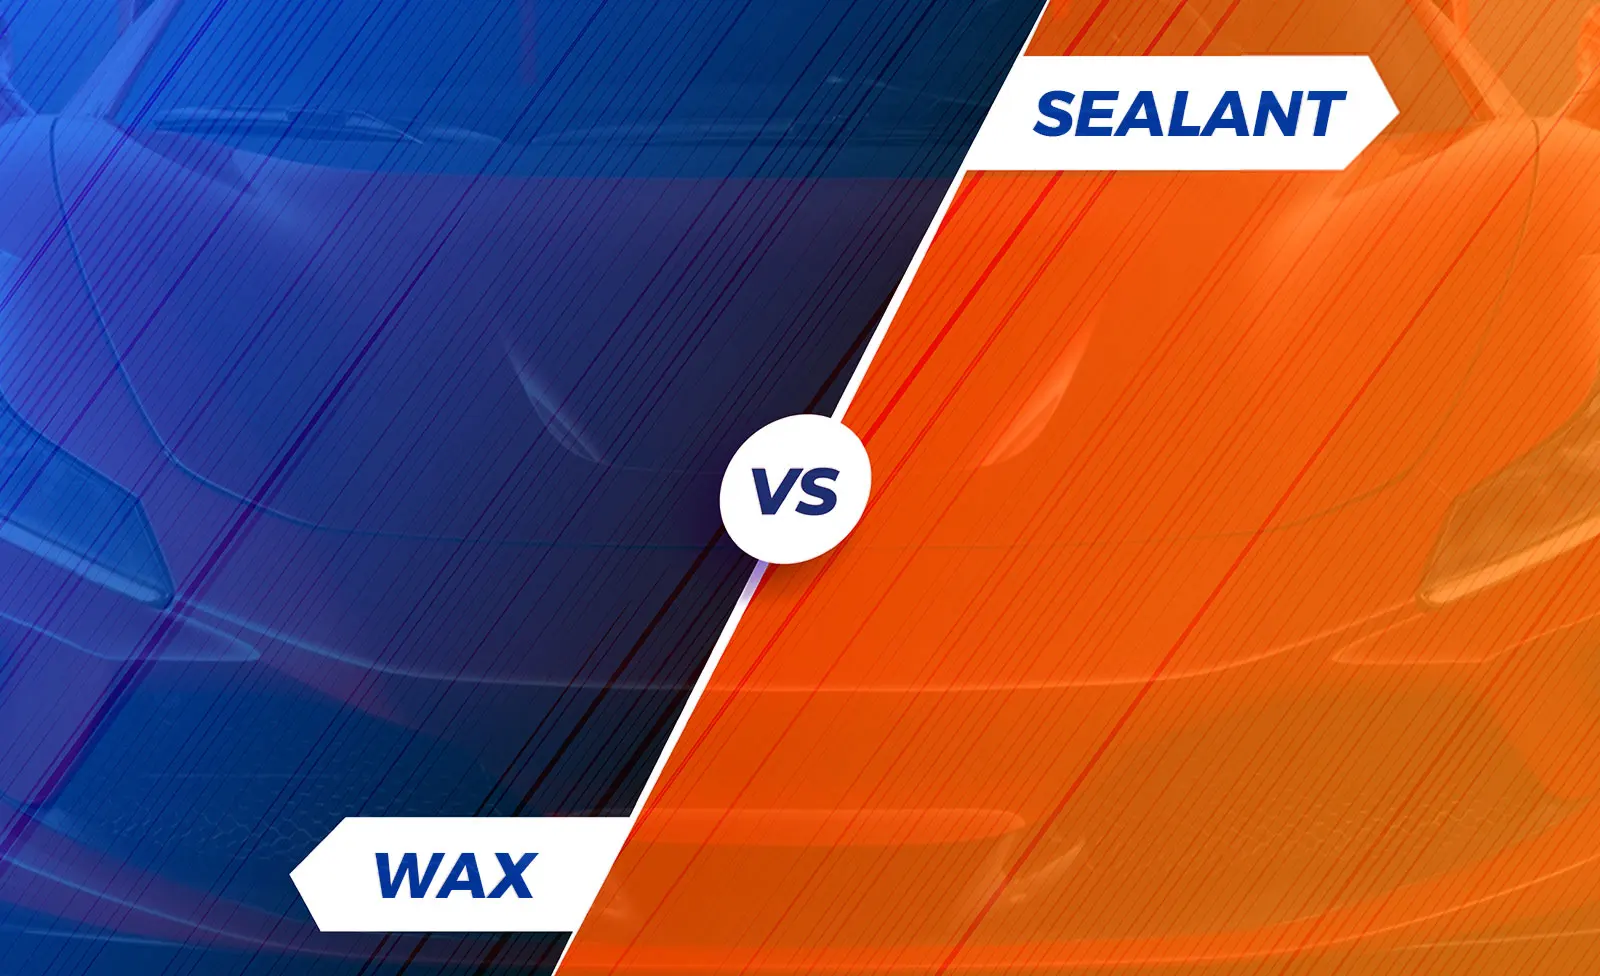 Wax or Sealant